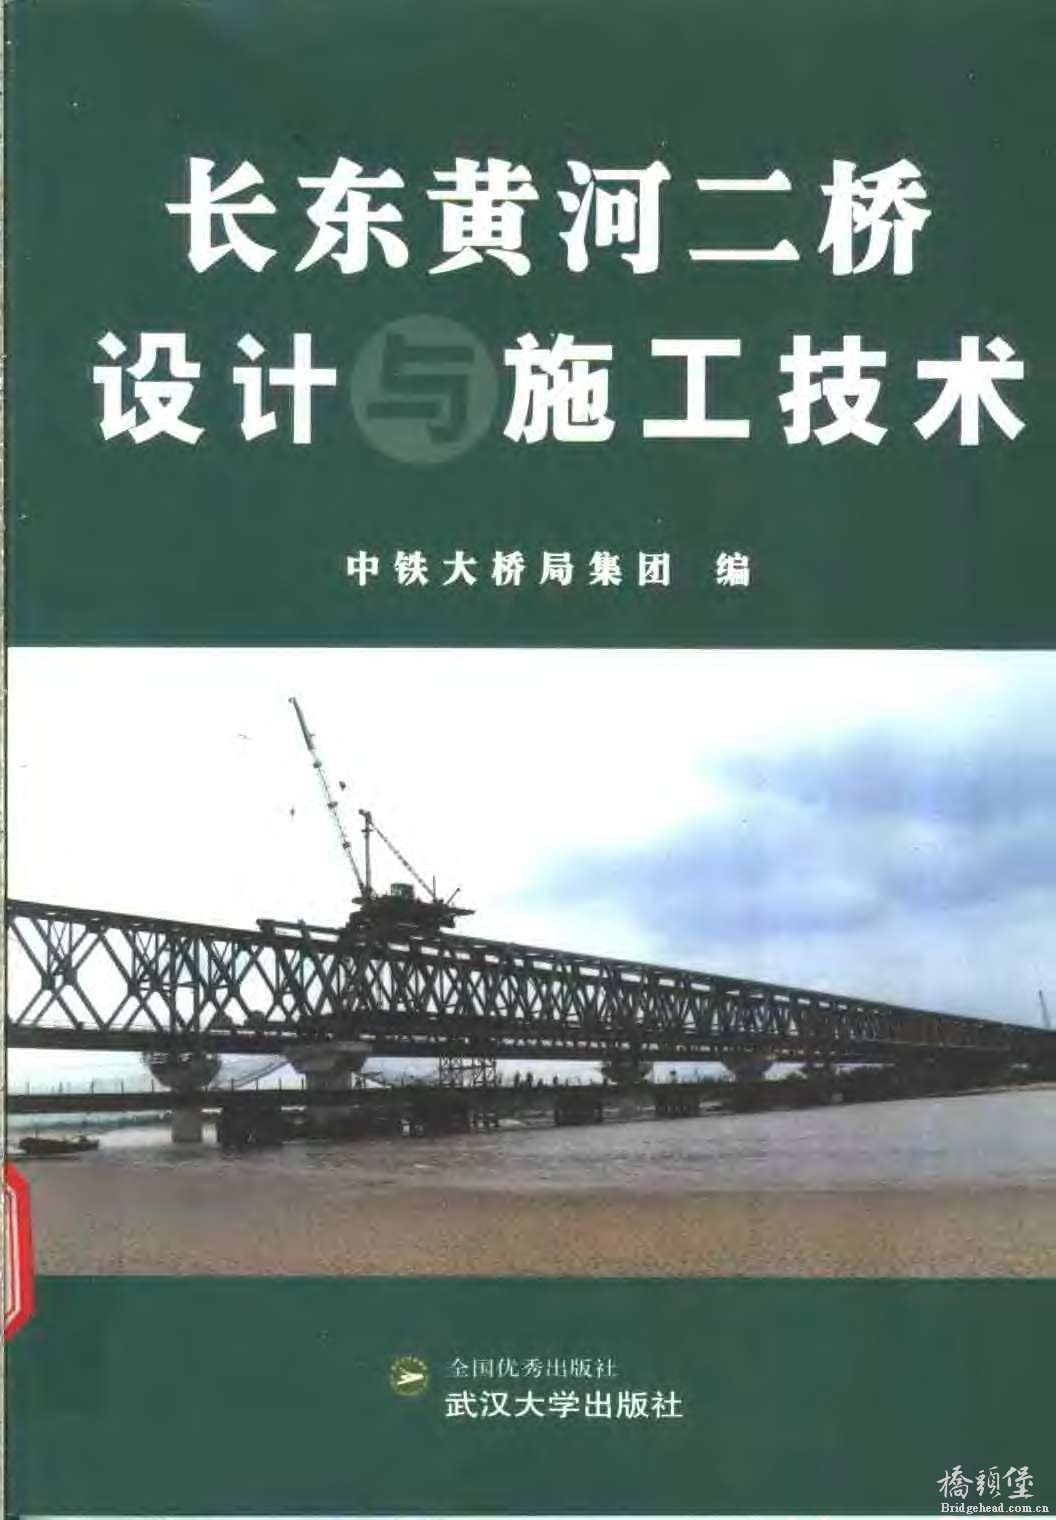 长东黄河二桥设计与施工技术_页面_001.jpg